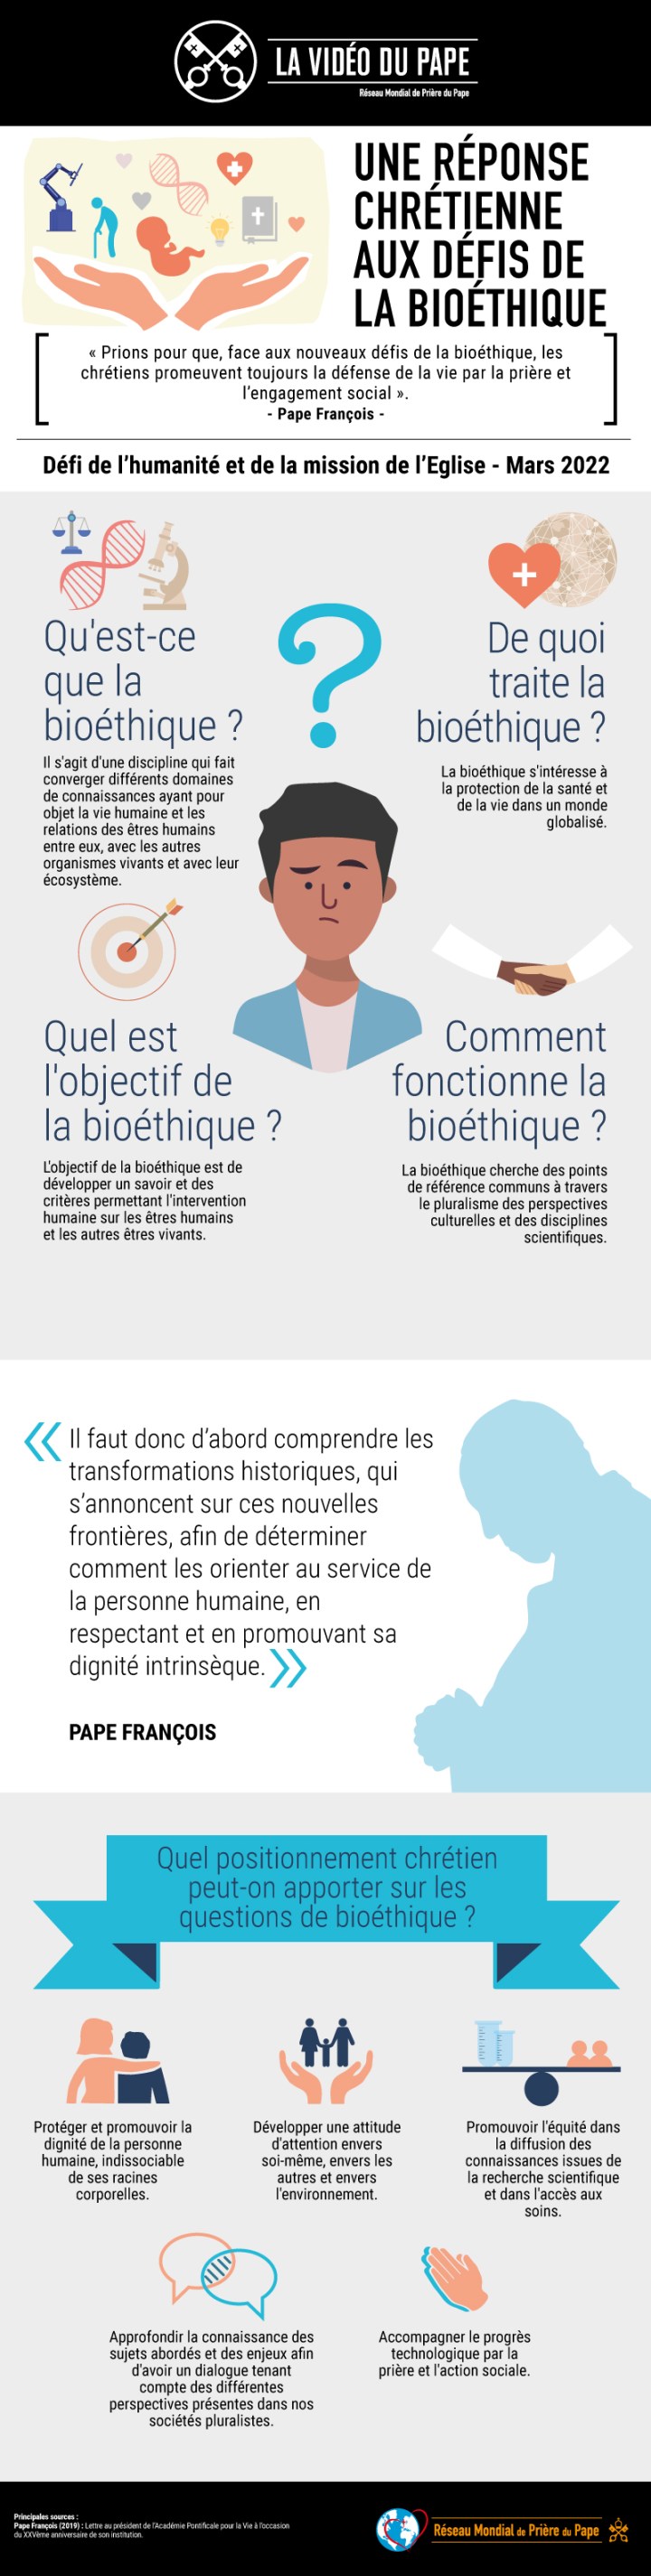 Infographic-TPV-3-2022-FR-Pour-une-reponse-chretienne-aux-defis-de-la-bioethique.jpg